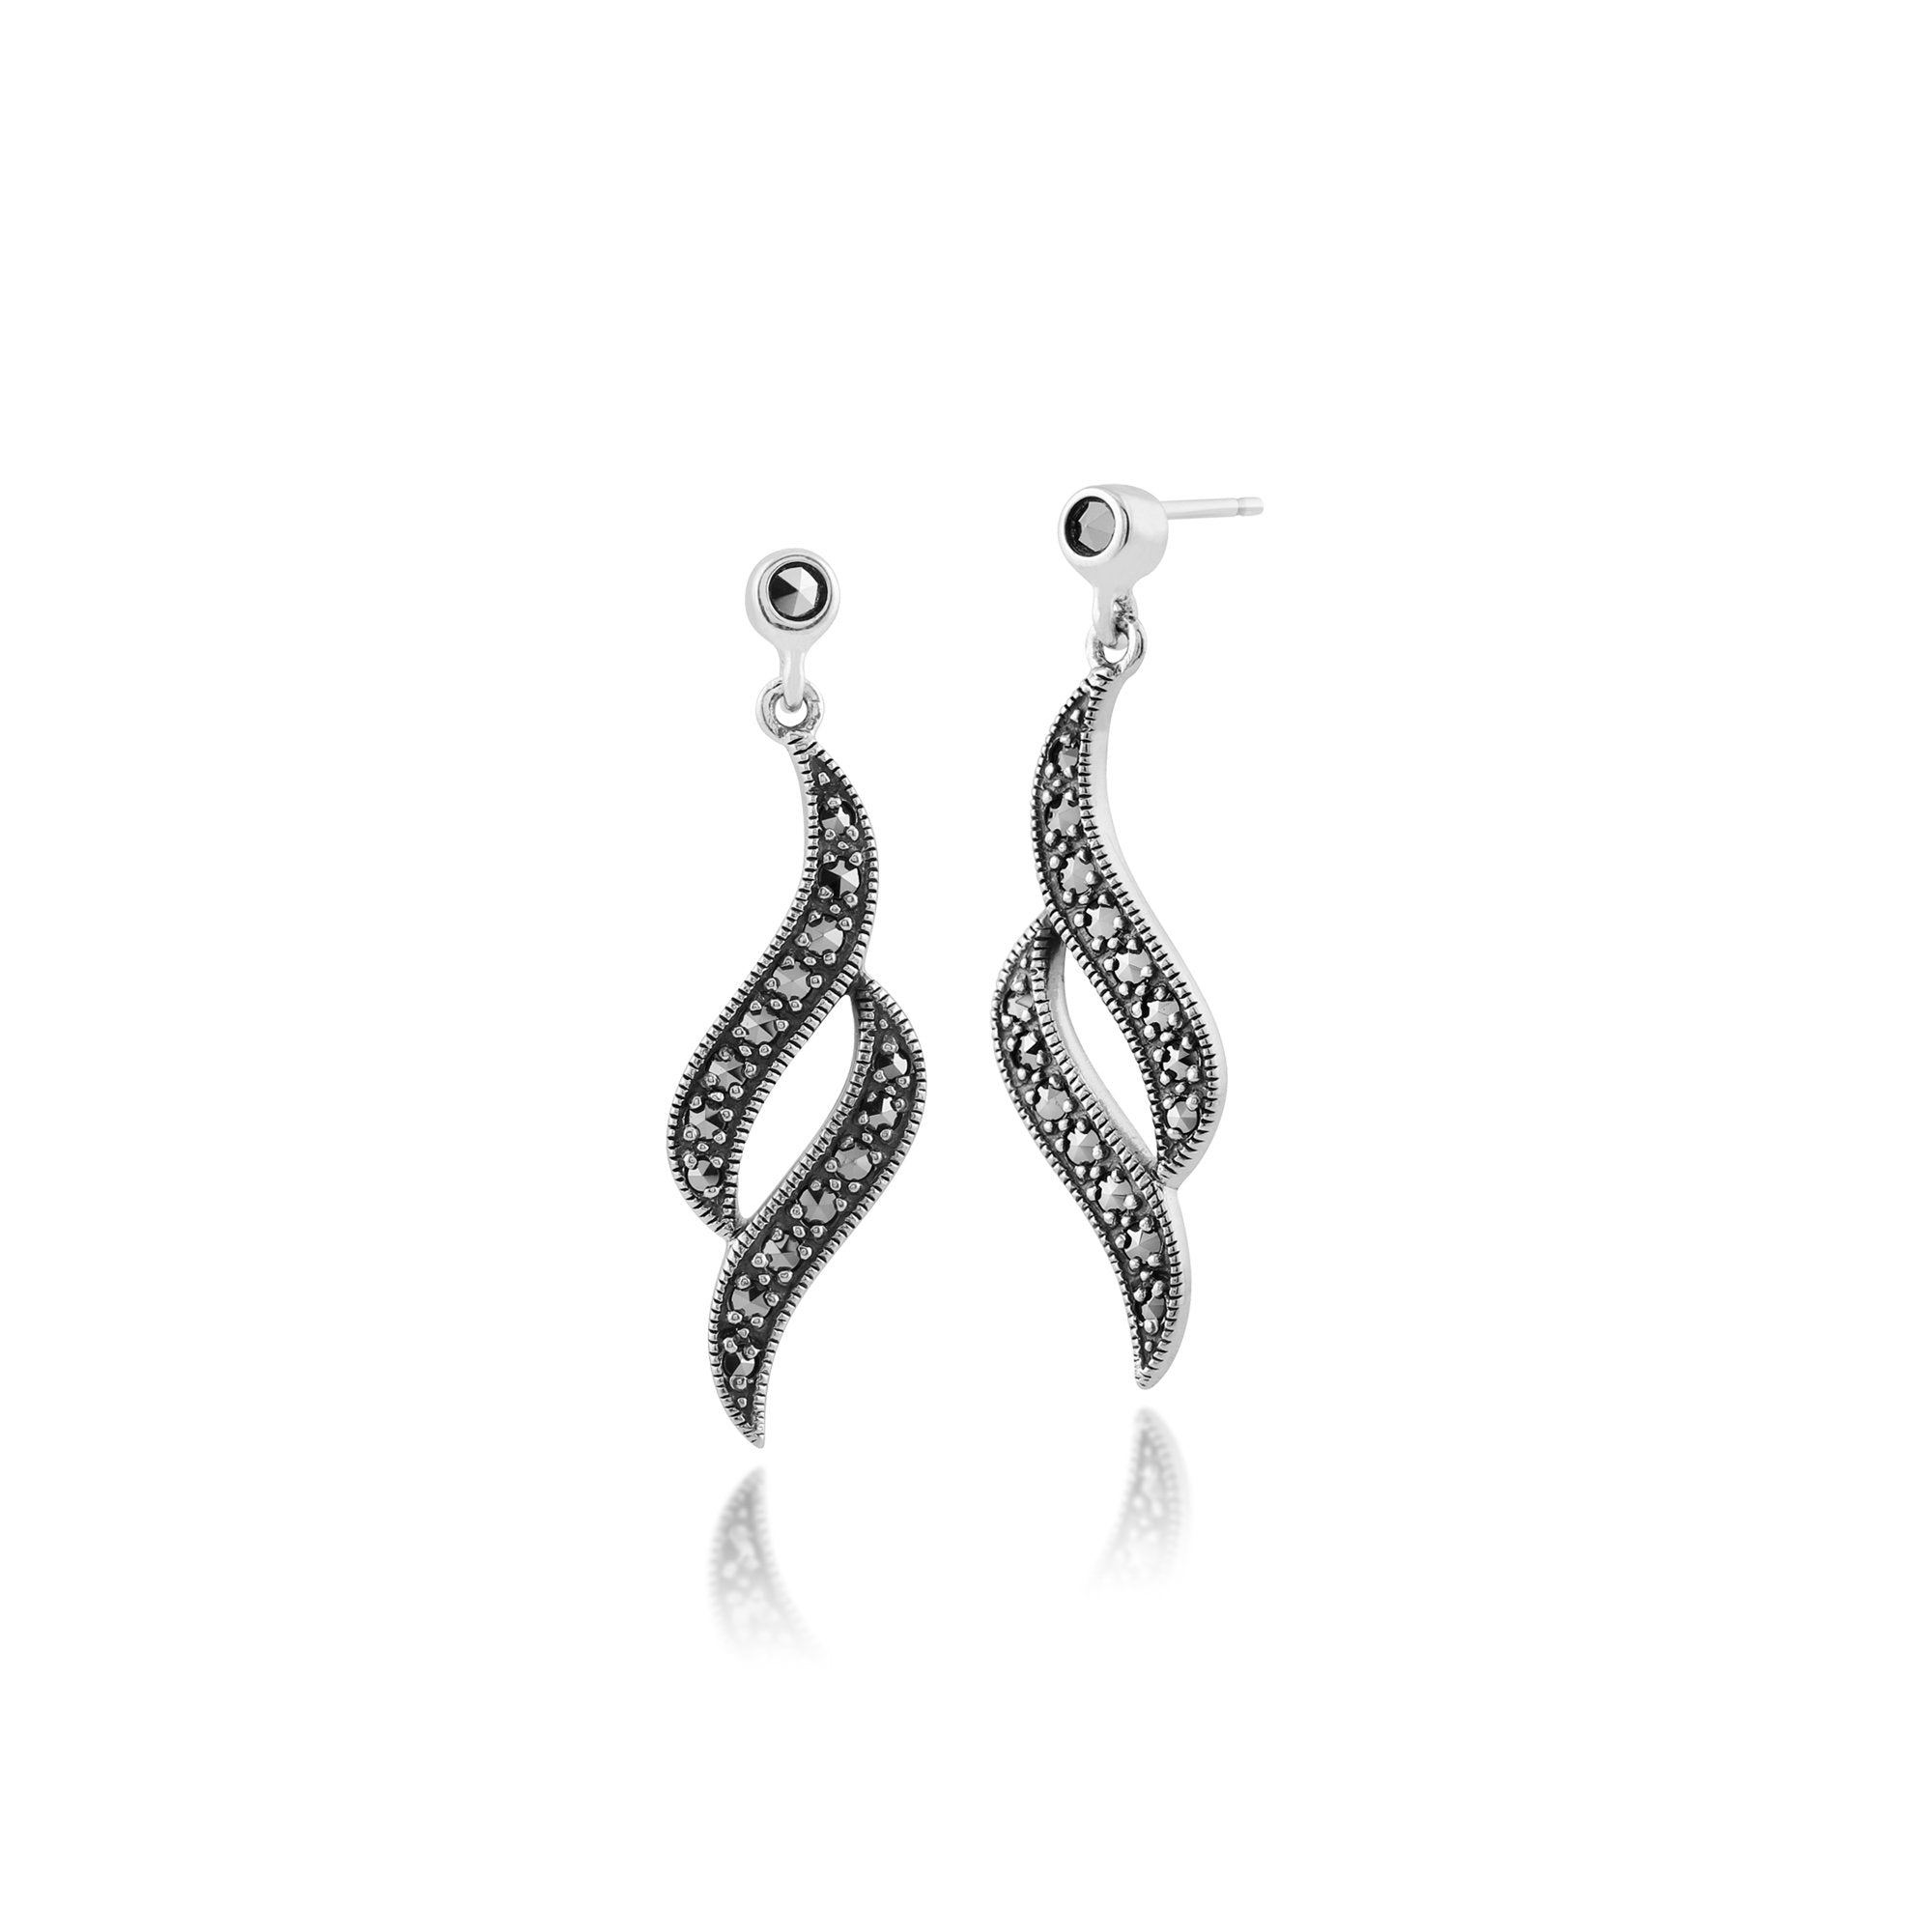 Art Nouveau Style Round Marcasite Swirl Drop Earrings in 925 Sterling Silver